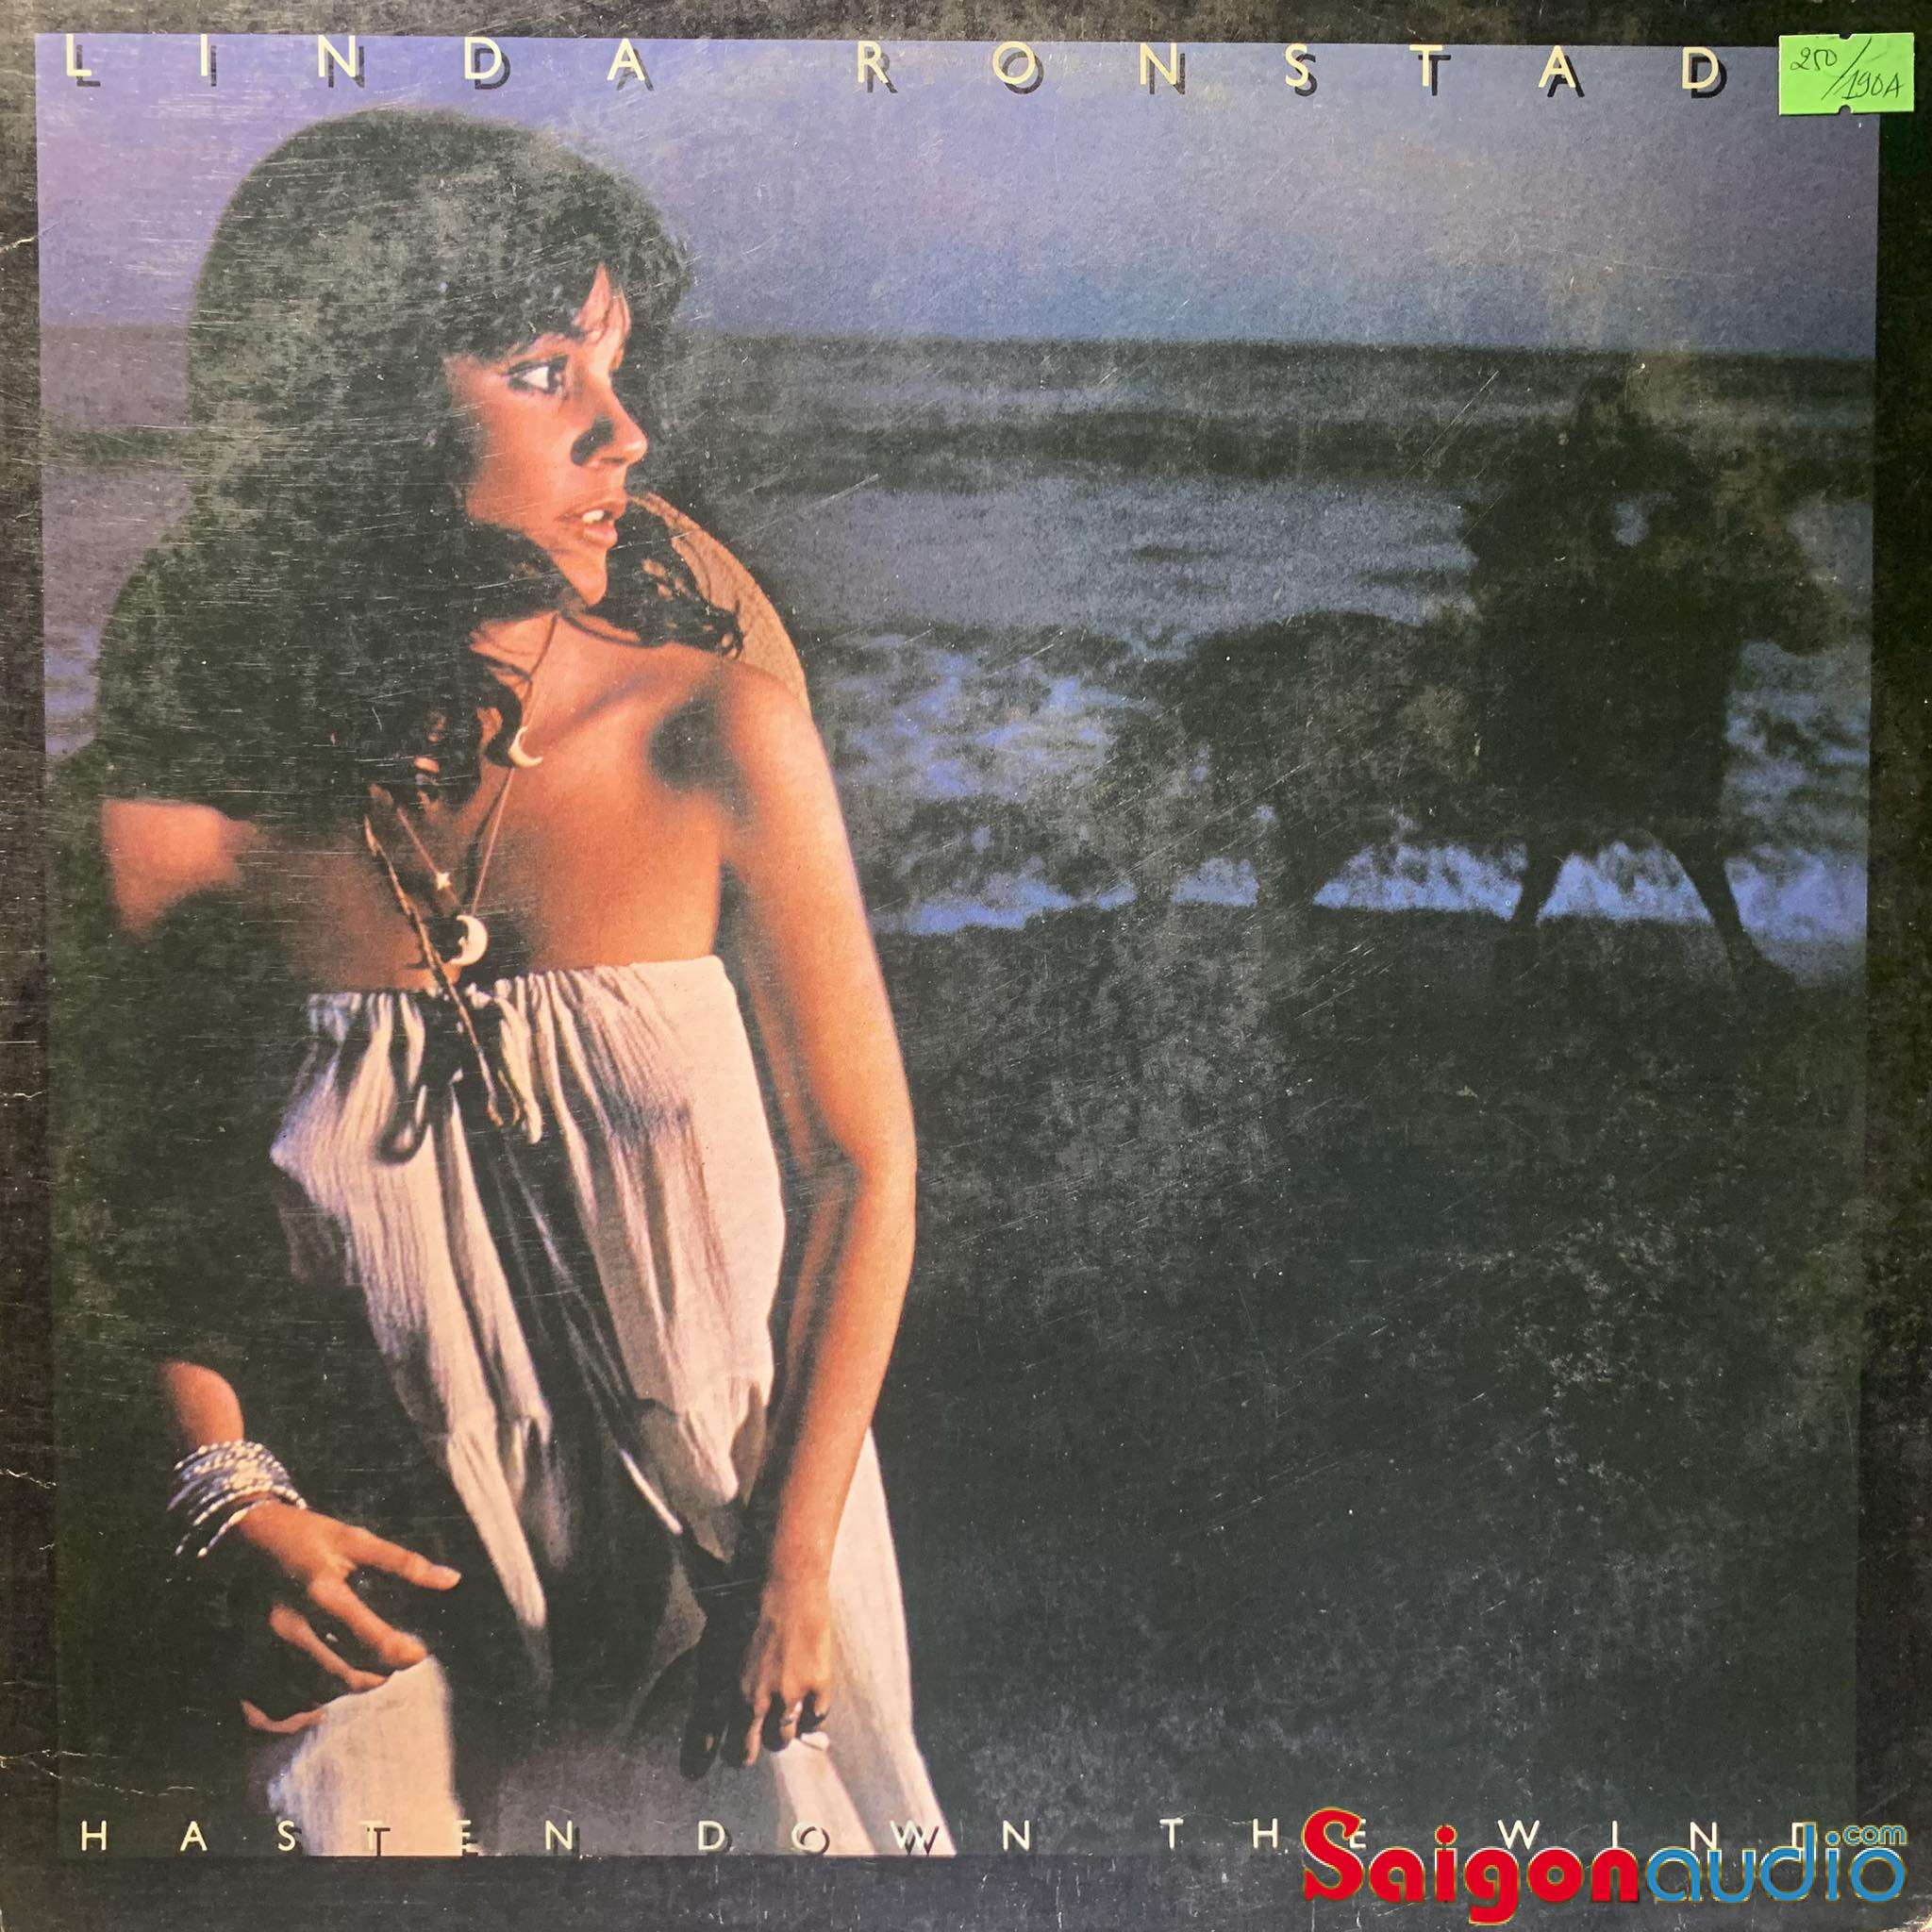 Đĩa than Linda Ronstadt - Hasten Down The Wind | LP Vinyl Records